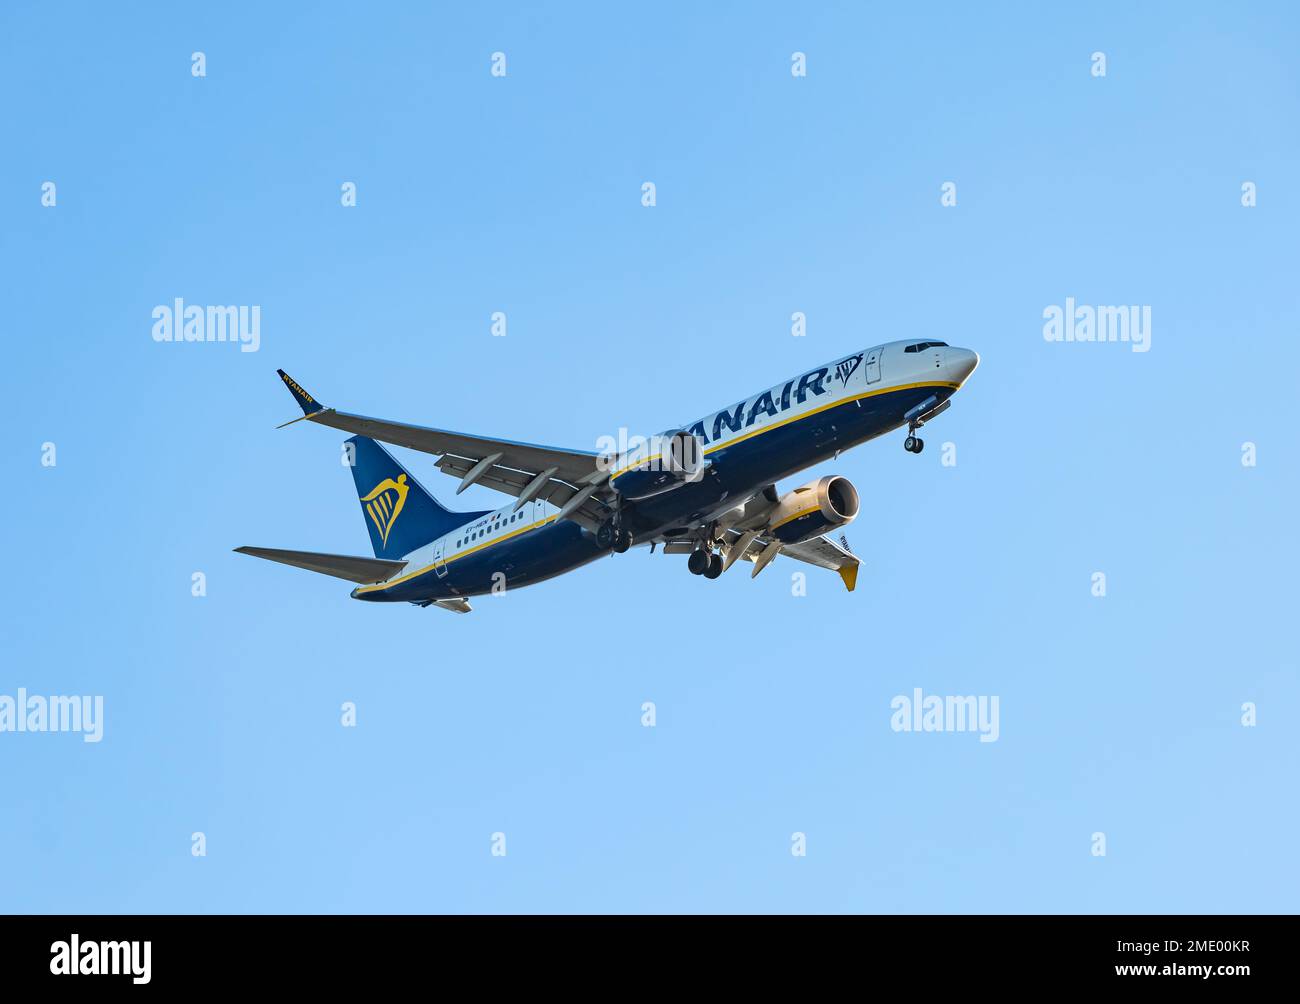 Flugzeug von Ryanair, das mit Unterwagen vor klarem blauen Himmel landet, Schottland, Vereinigtes Königreich Stockfoto